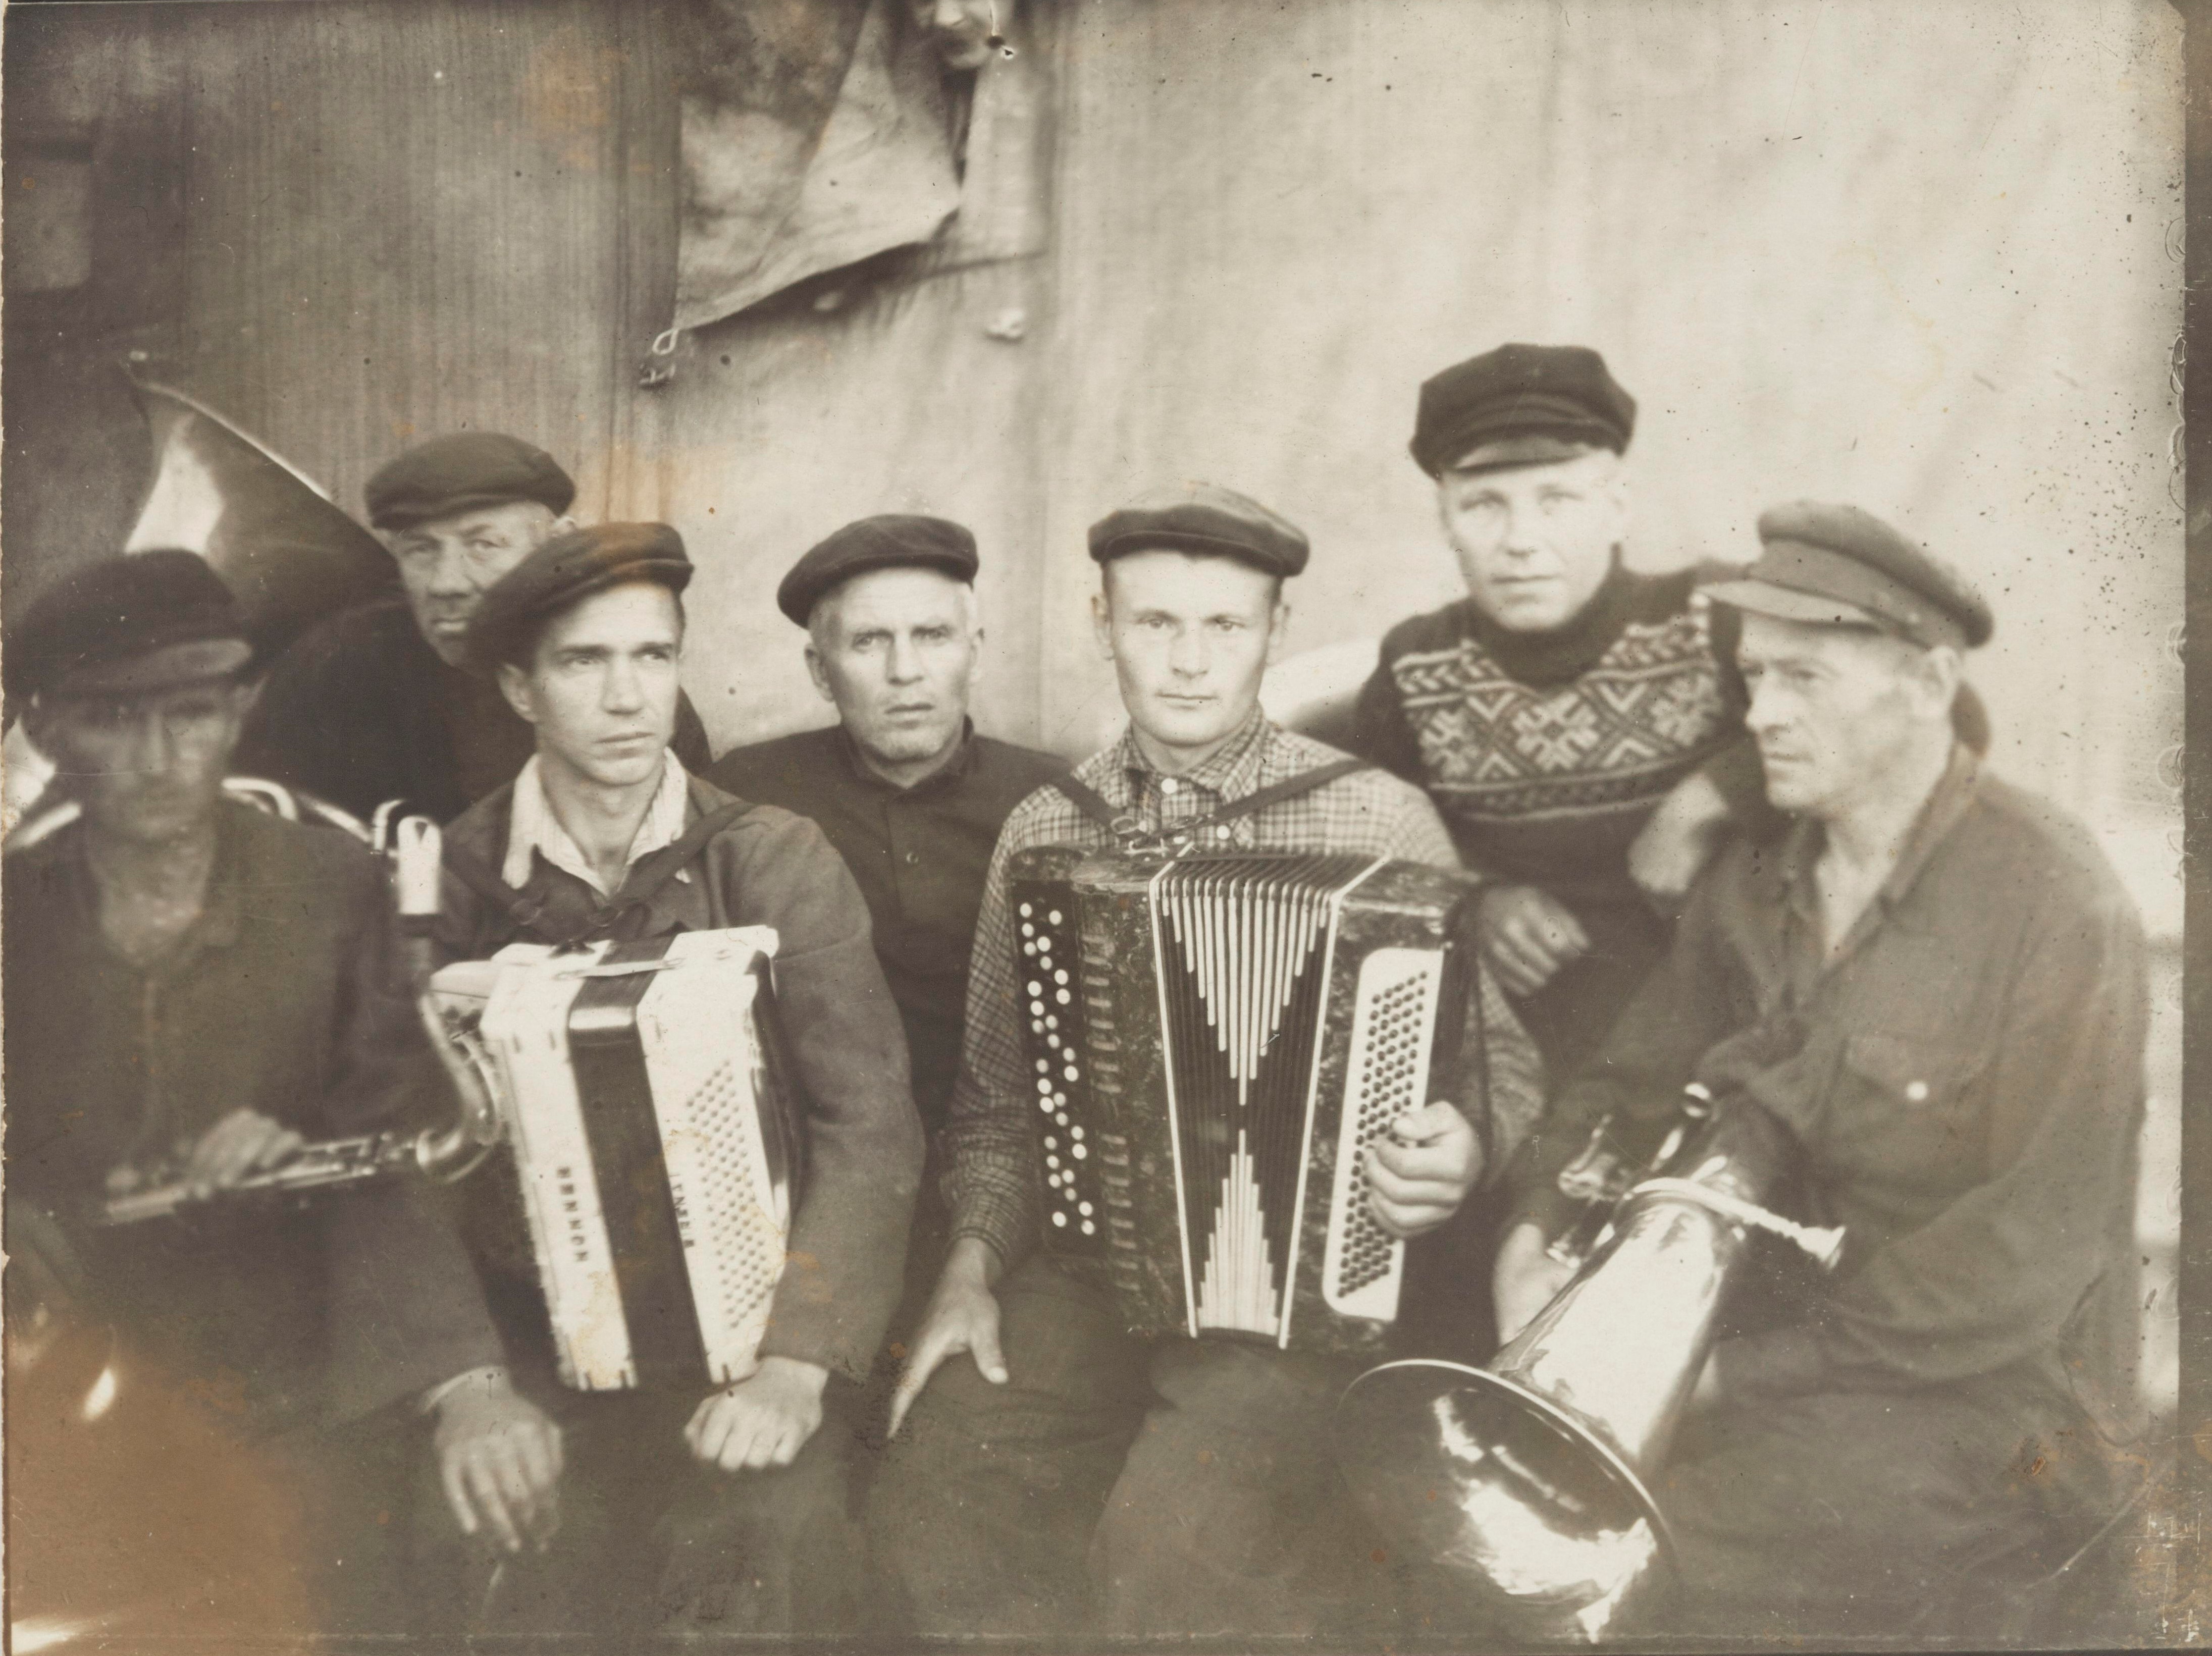 Yhteiskuva orkesterista Nadvoitsan vankileirillä. Suomalainen Vilho Saarinen on kuvassa vasemmalla tenorisaksofoni sylissään. Leirivangeista koostuvat orkesteri oli varsin kansainvälinen: muut soittajat olivat kansallisuudeltaan liettualaisia, karjalaisia, venäläisiä, virolaisia ja latvialaisia. Kuva on vuodelta 1954, viimeiseltä kesältä ennen Saarisen leiriltä vapautumista. SKS KRA, Hannele Mikkelän kokoelma. CC BY-NC-ND 4.0